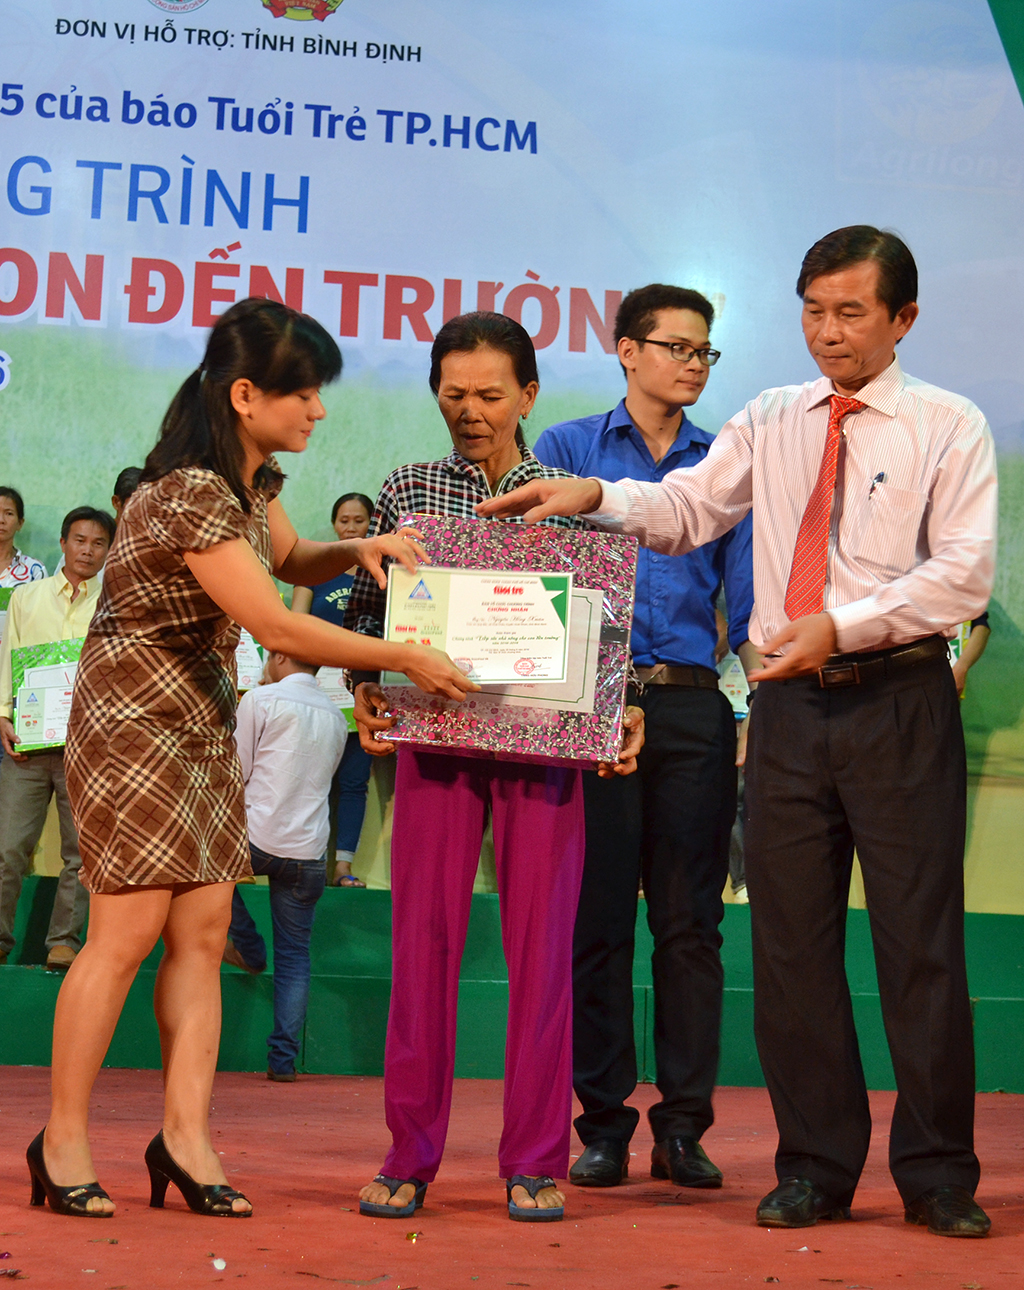 Ông Trần Châu - phó chủ tịch UBND tỉnh Bình Định – cùng đại diện một nhà tài trợ trao vốn cho nông dân - Ảnh: DUY THANH